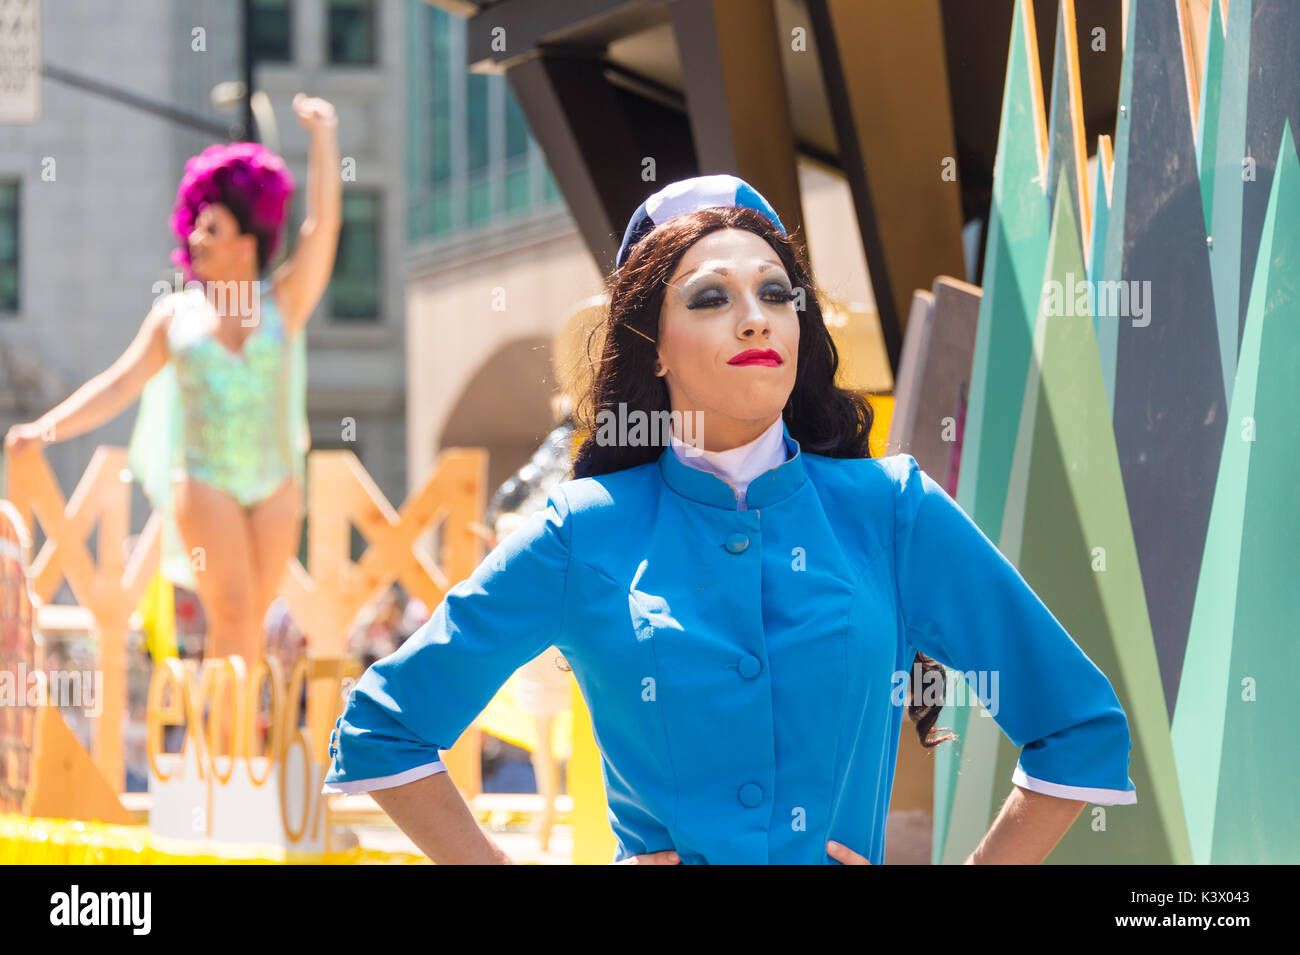 Montréal, Canada - 20 août 2017 : hôtesse, drag queen à la parade de la Fierté gaie de Montréal Banque D'Images